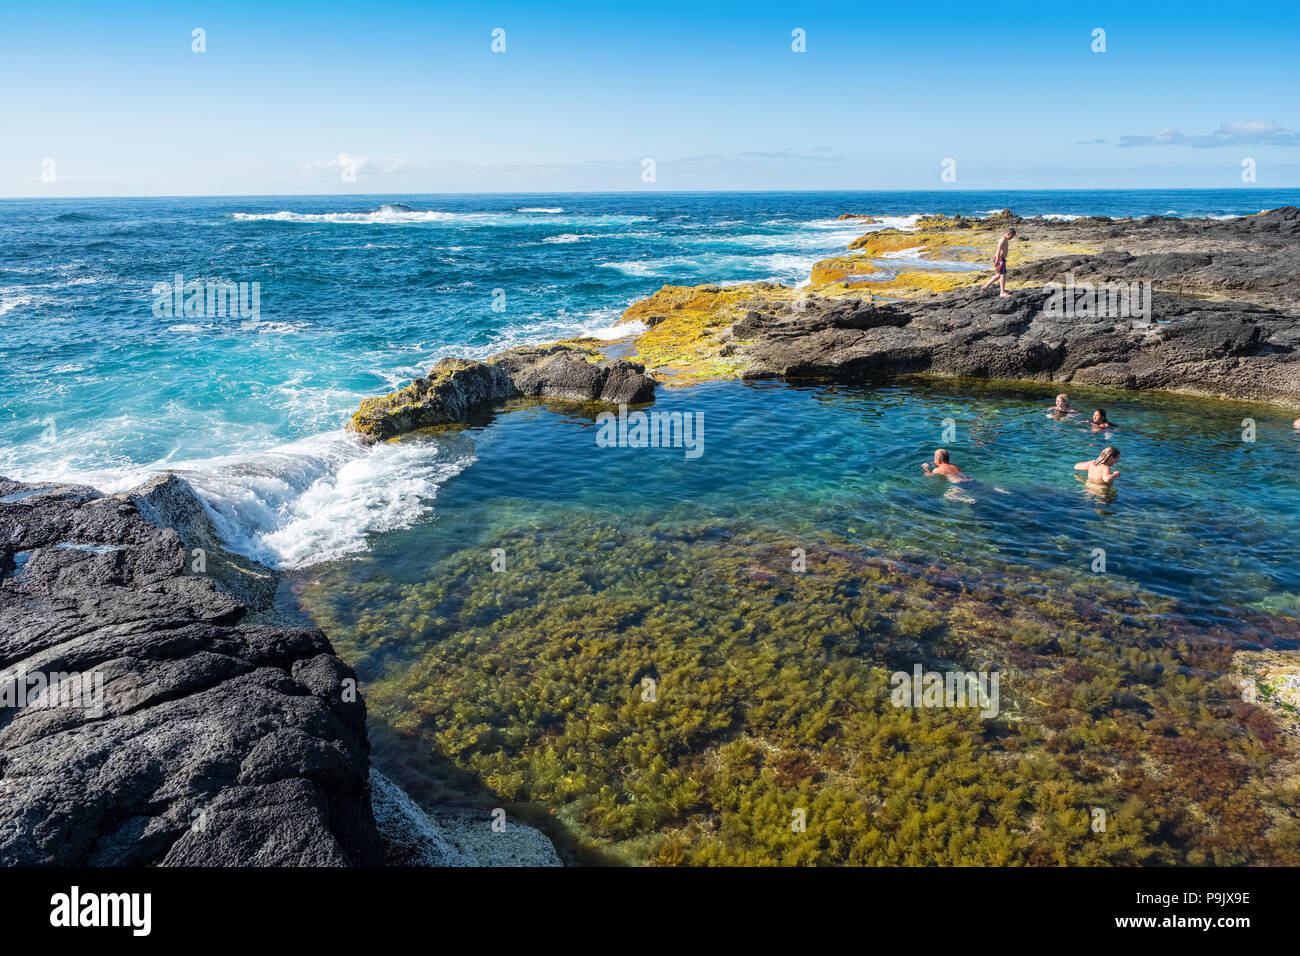 Piscinas naturales en la costa de Sao Miguel, Azores Foto de stock